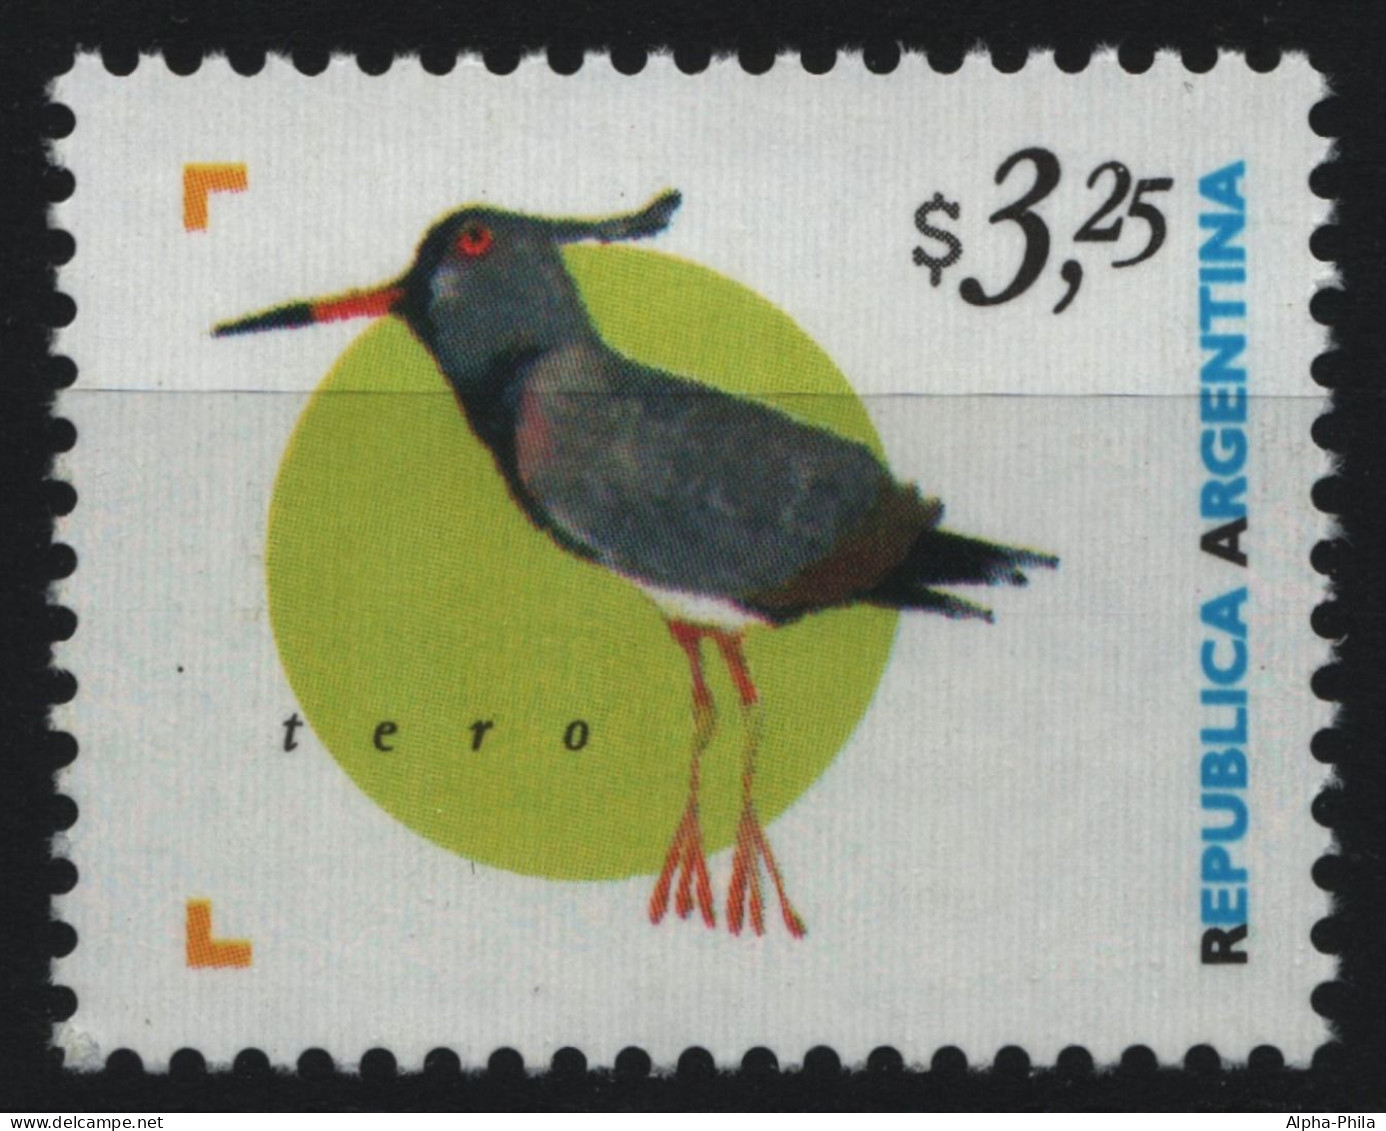 Argentinien 1998 - Mi-Nr. 2419 ** - MNH - Vögel / Birds - Ungebraucht